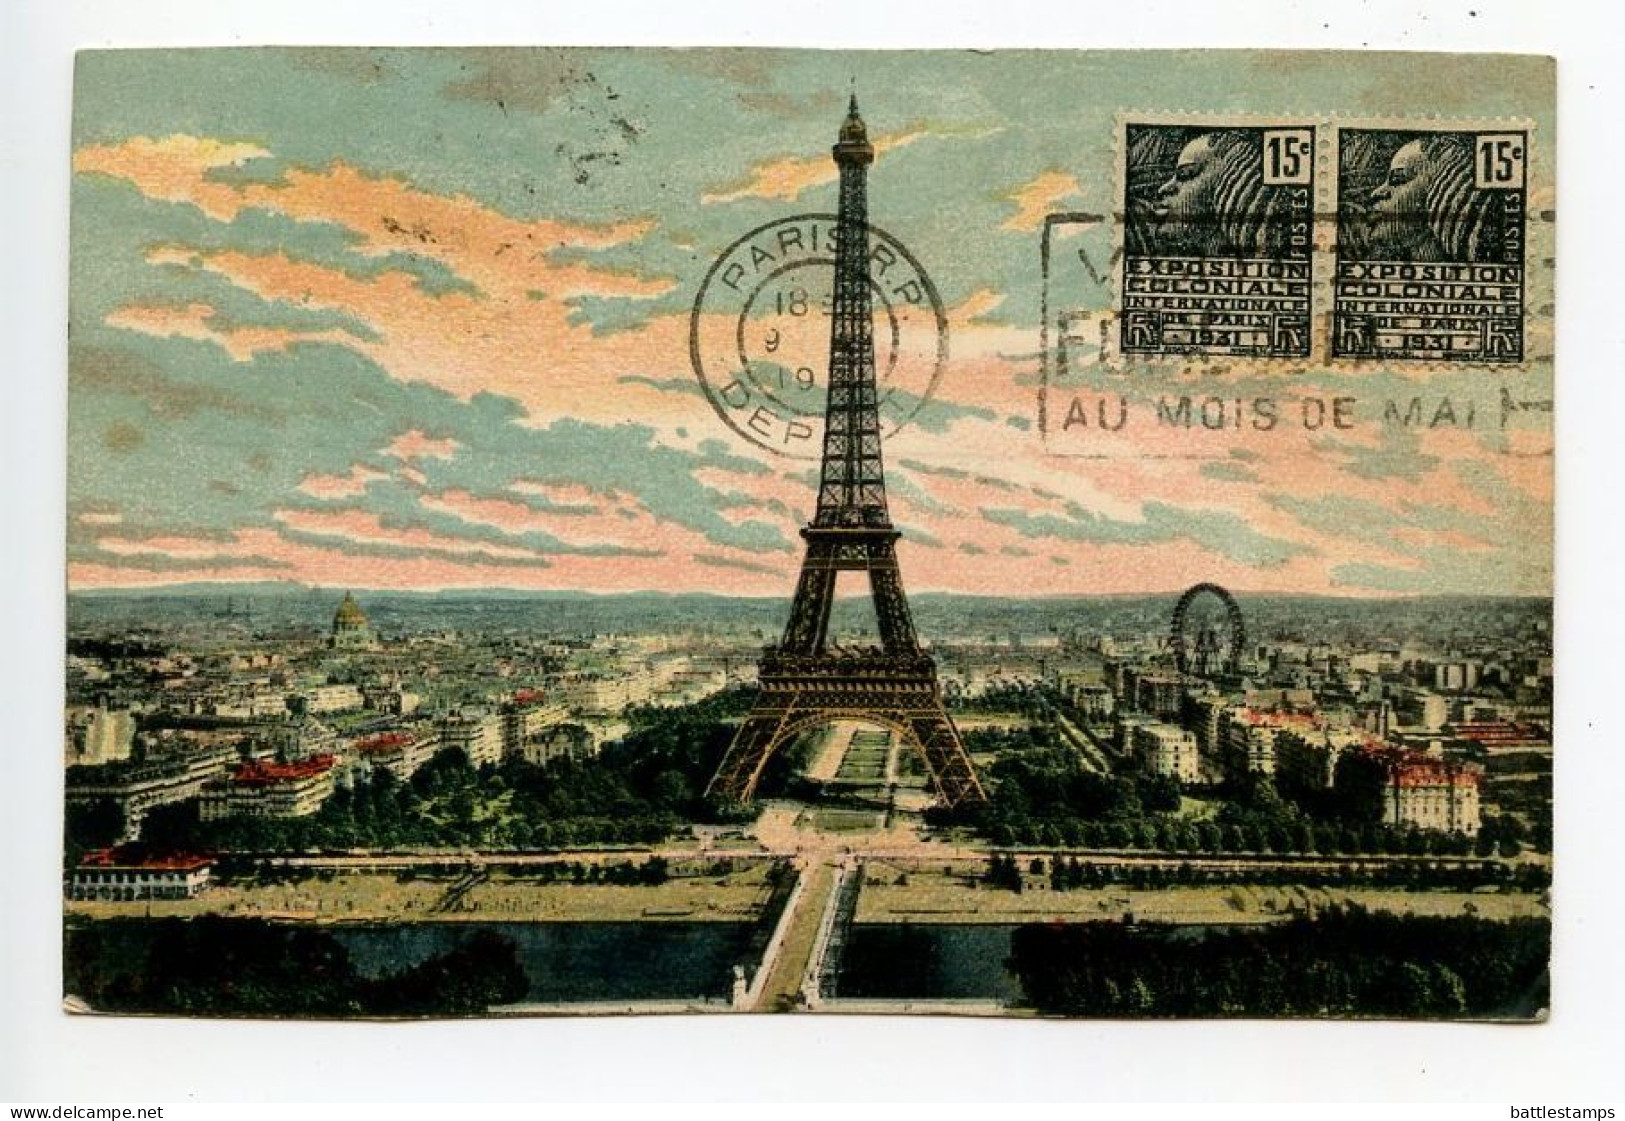 France 1931 Postcard Paris - Eiffel Tower; Scott 258 - 15c. Colonial Exposition, Fachi Woman, Pair - Tour Eiffel